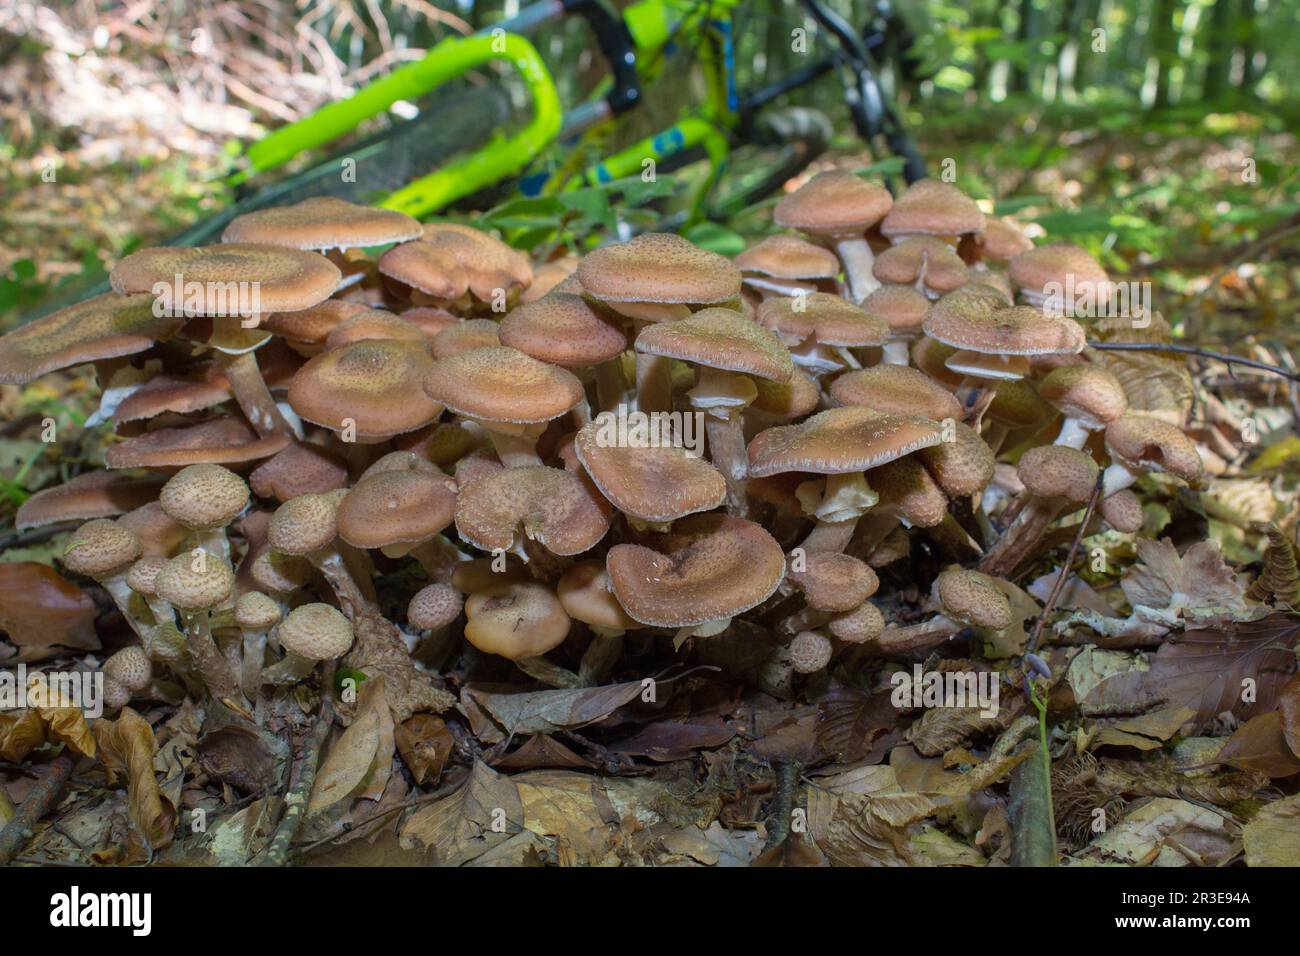 Les champignons agariques au miel poussent sur un arbre dans la forêt d'automne. Groupe de champignons sauvages. Banque D'Images